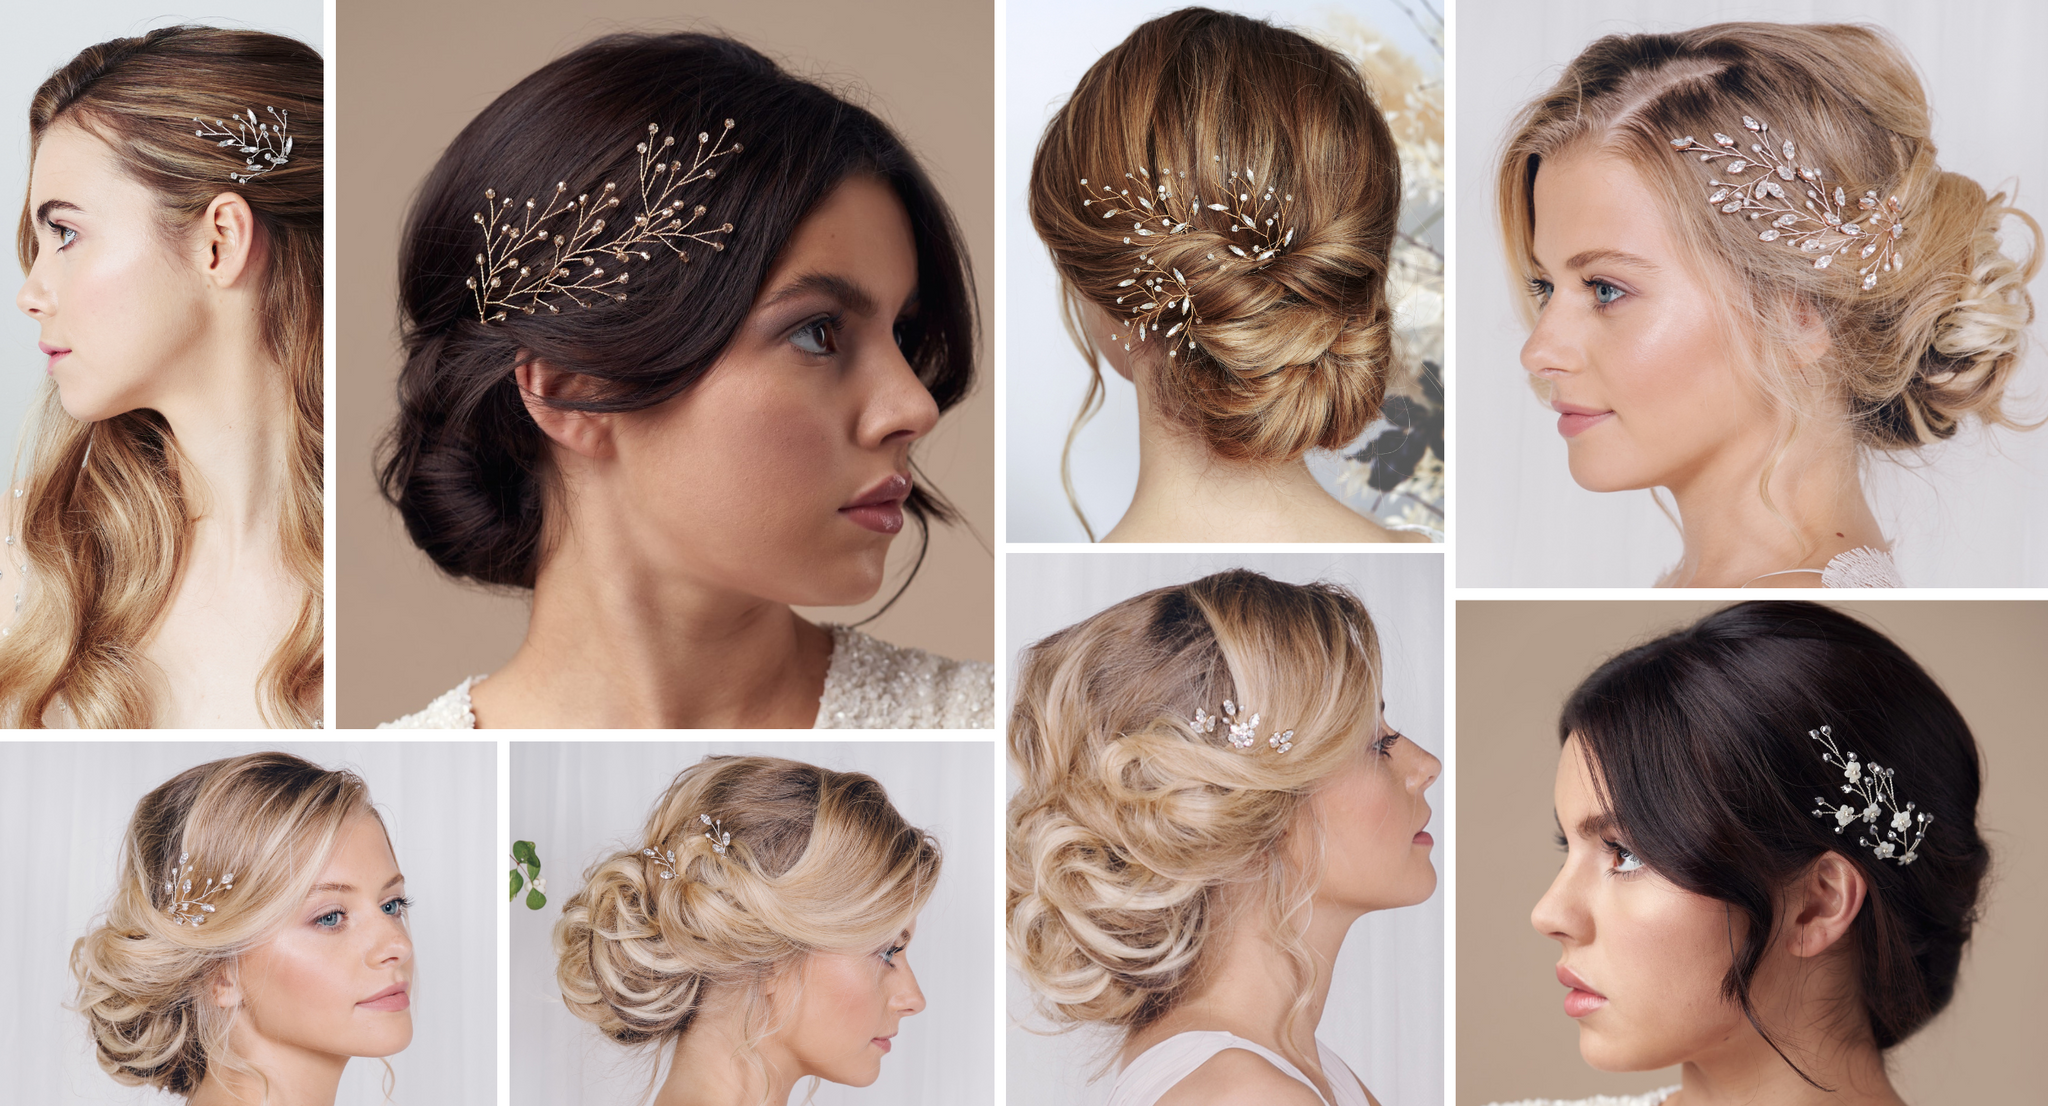 botanical wedding hair accessories - hair pins